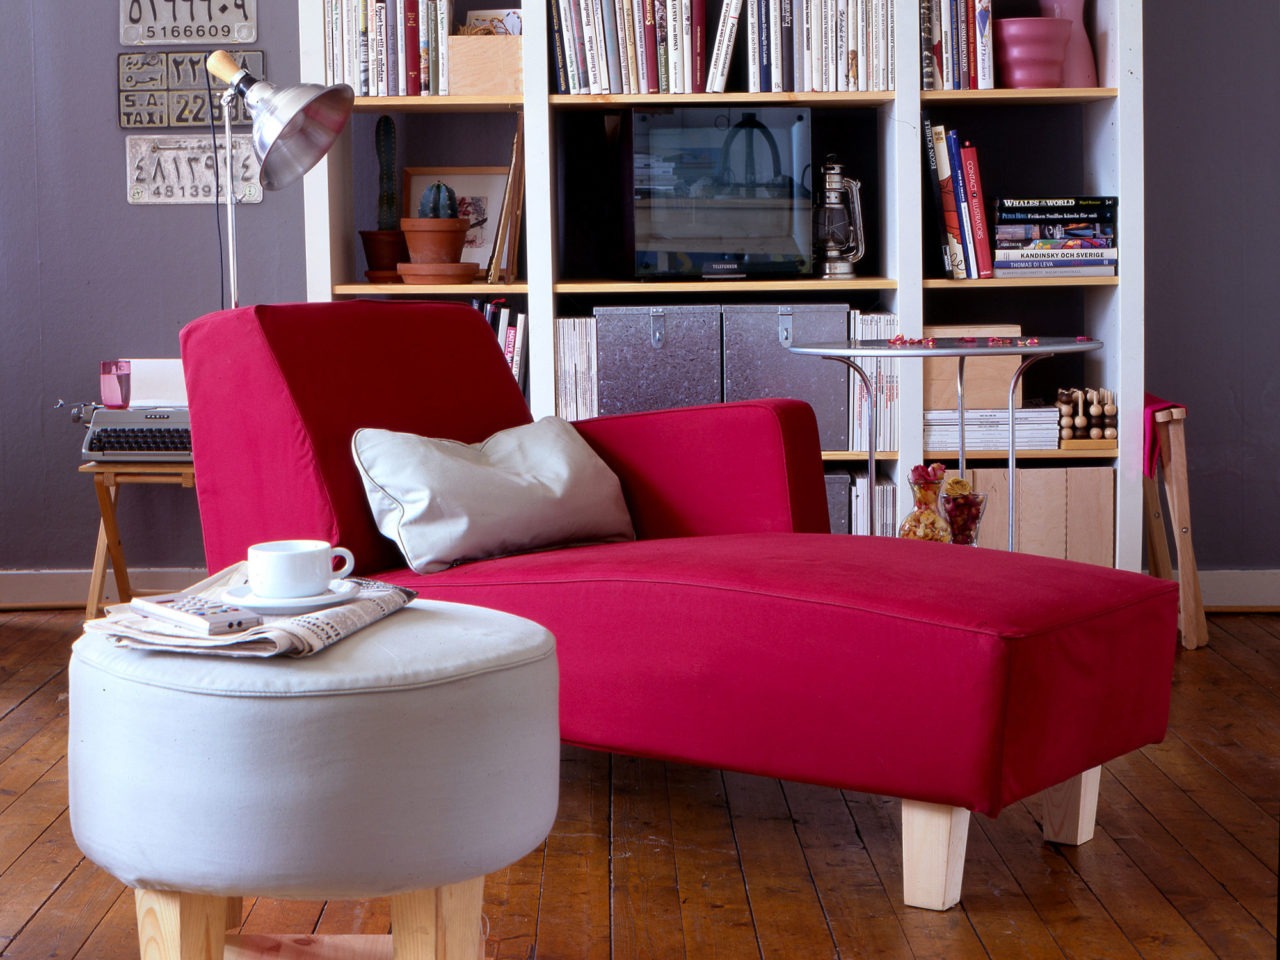 Cerca de una estantería hay un diván rojo robusto y sencillo. Al lado, un taburete redondo y claro de diseño similar.